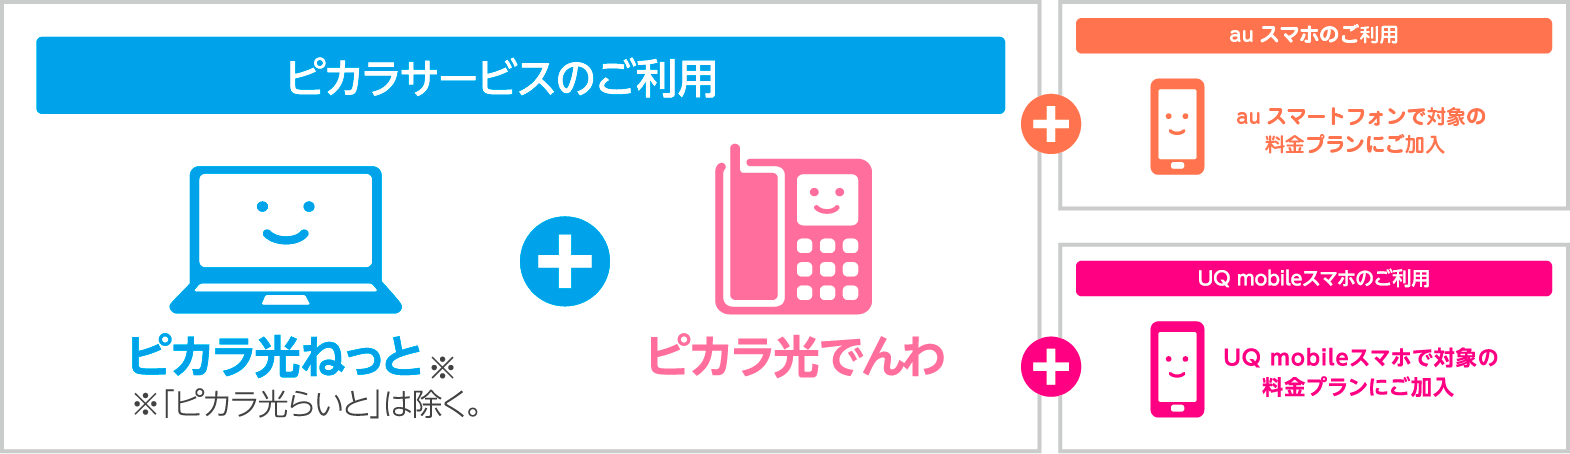 ピカラ光 auスマートバリュー/UQ mobile自宅セット割